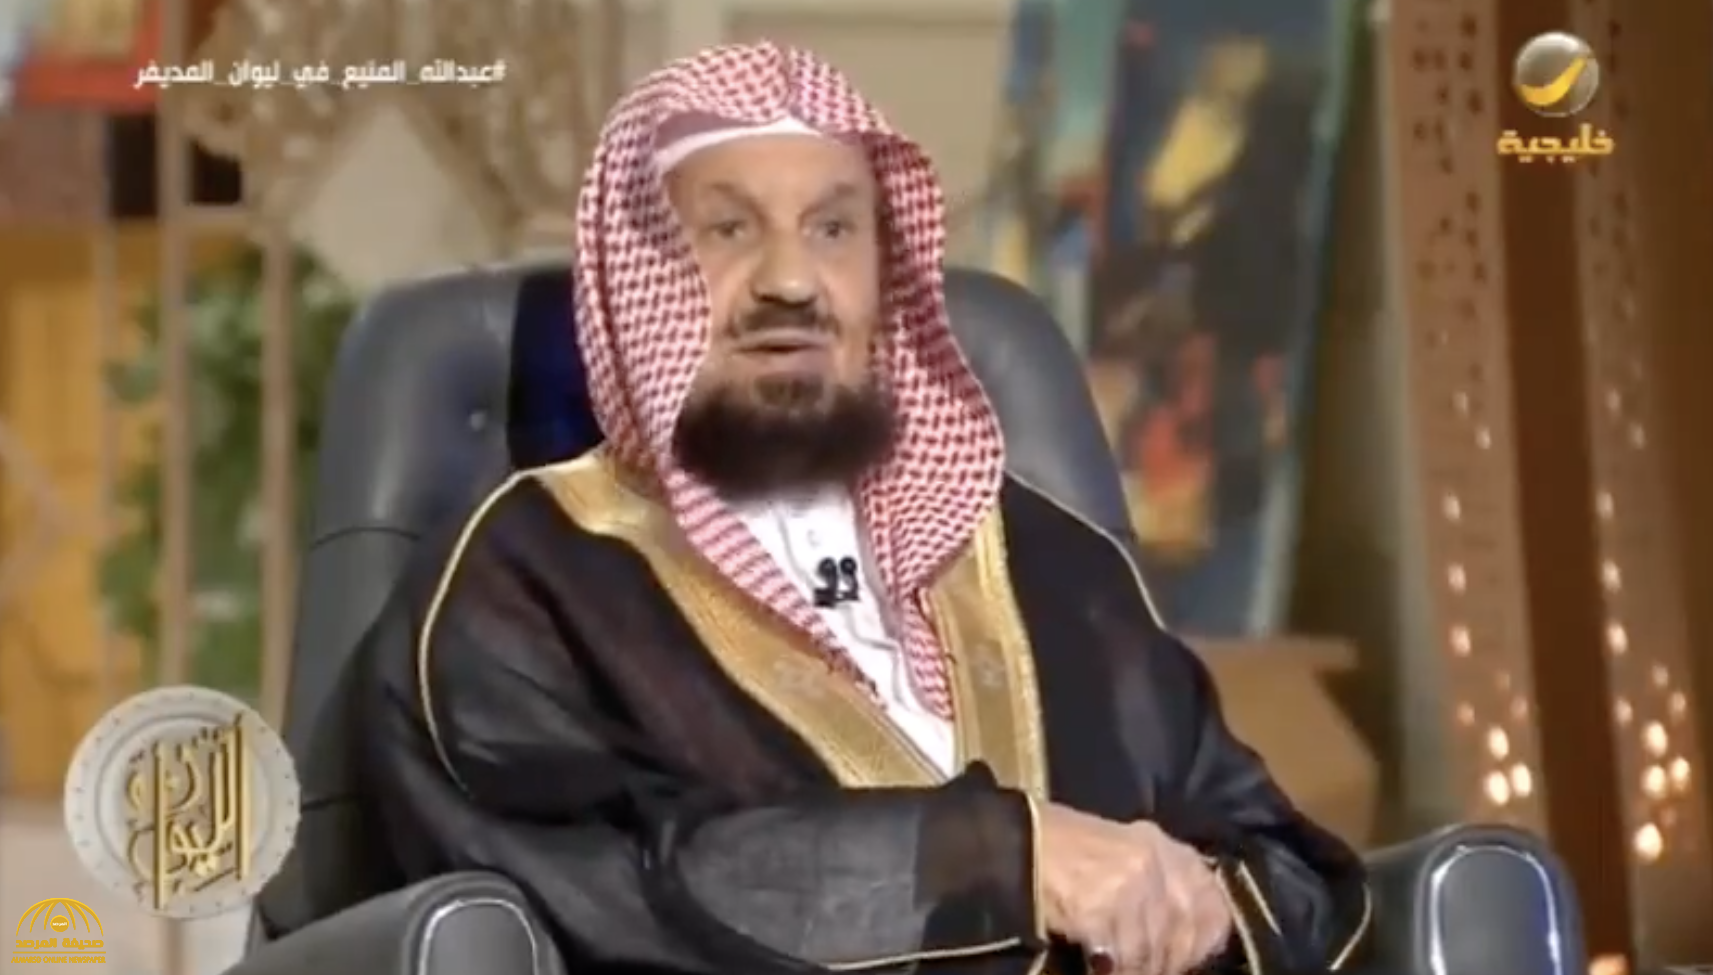 بالفيديو.. الشيخ "المنيع" يكشف قصتي إصداره حكمين ضد "الملك فهد" و"الملك عبدالله" خلال عمله بالقضاء